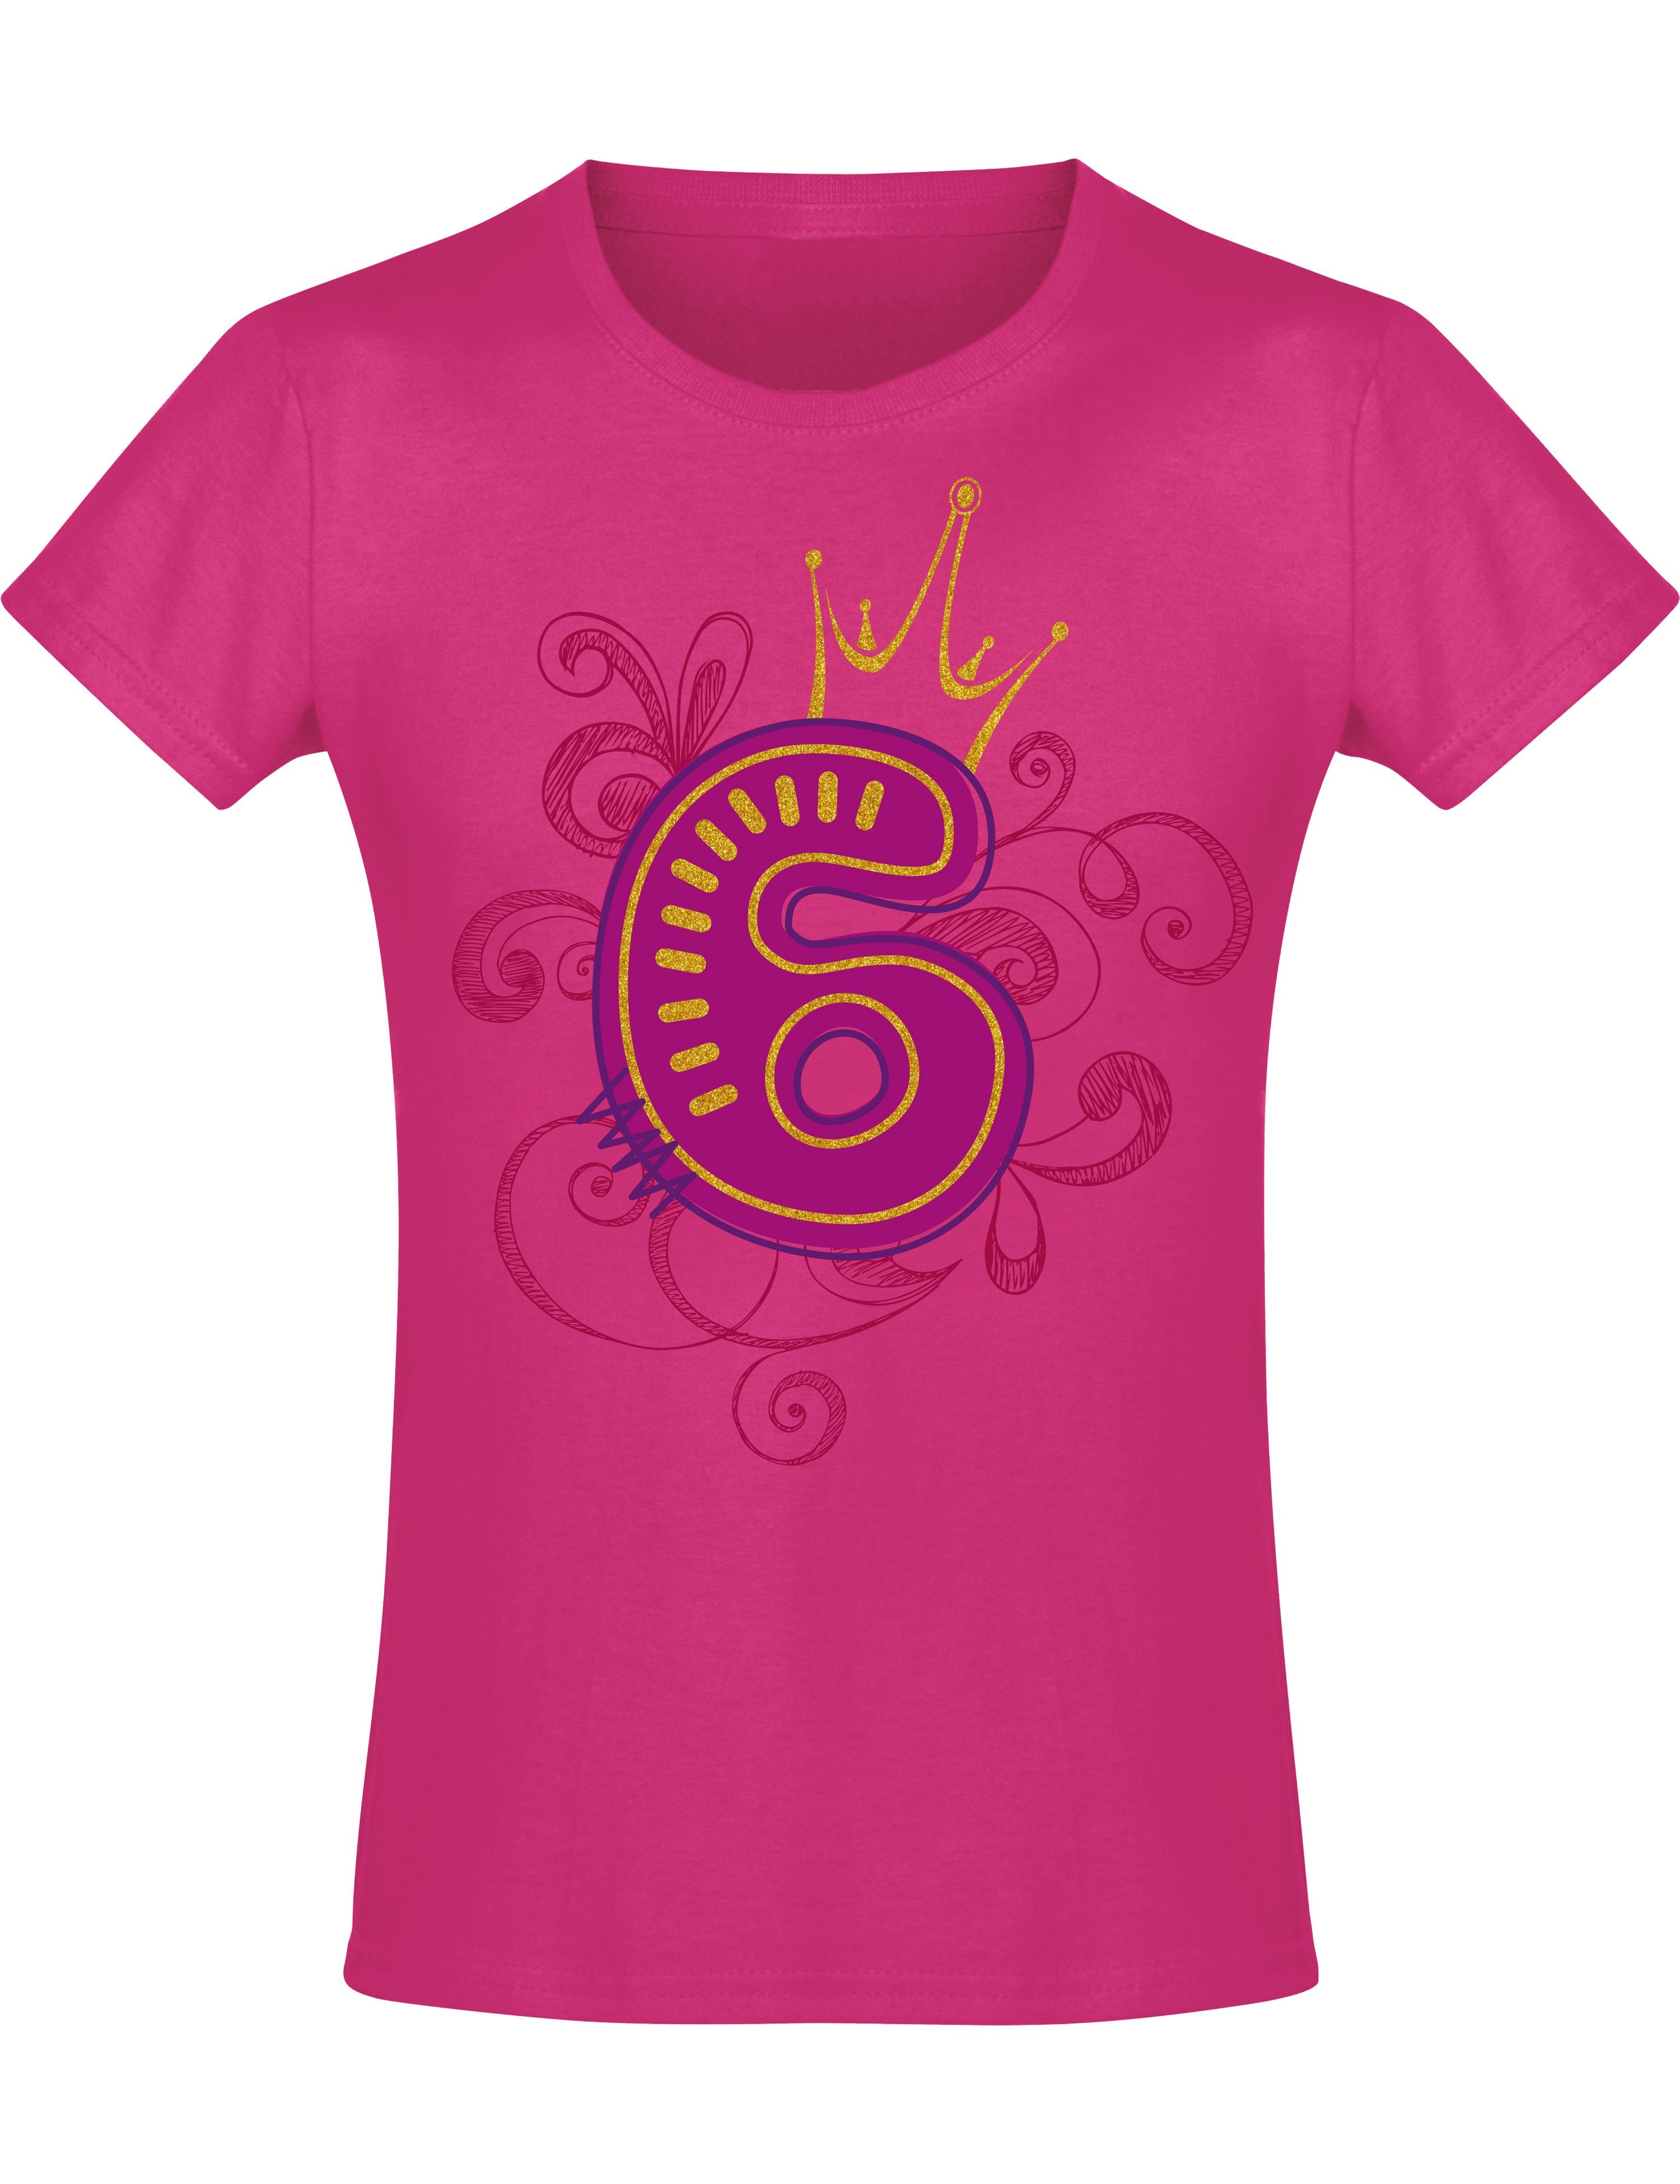 Baddery Print-Shirt Geburstagsgeschenk für Mädchen : 6 Jahre mit Krone, hochwertiger Siebdruck, aus Baumwolle